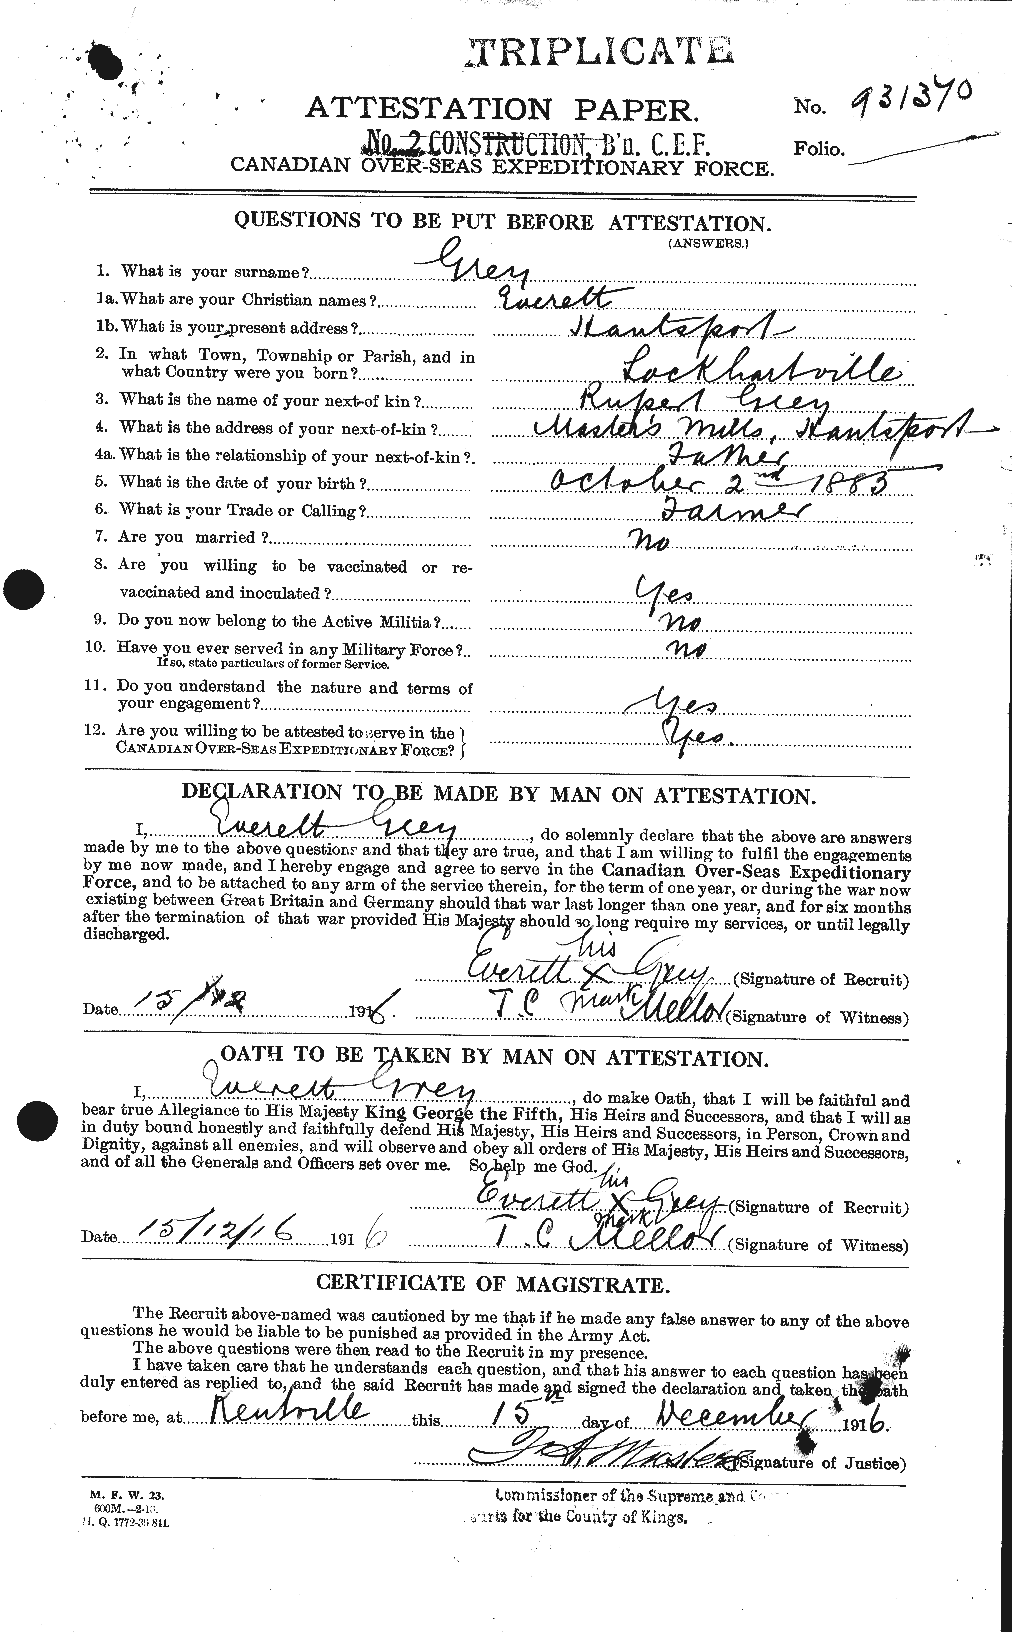 Dossiers du Personnel de la Première Guerre mondiale - CEC 367058a